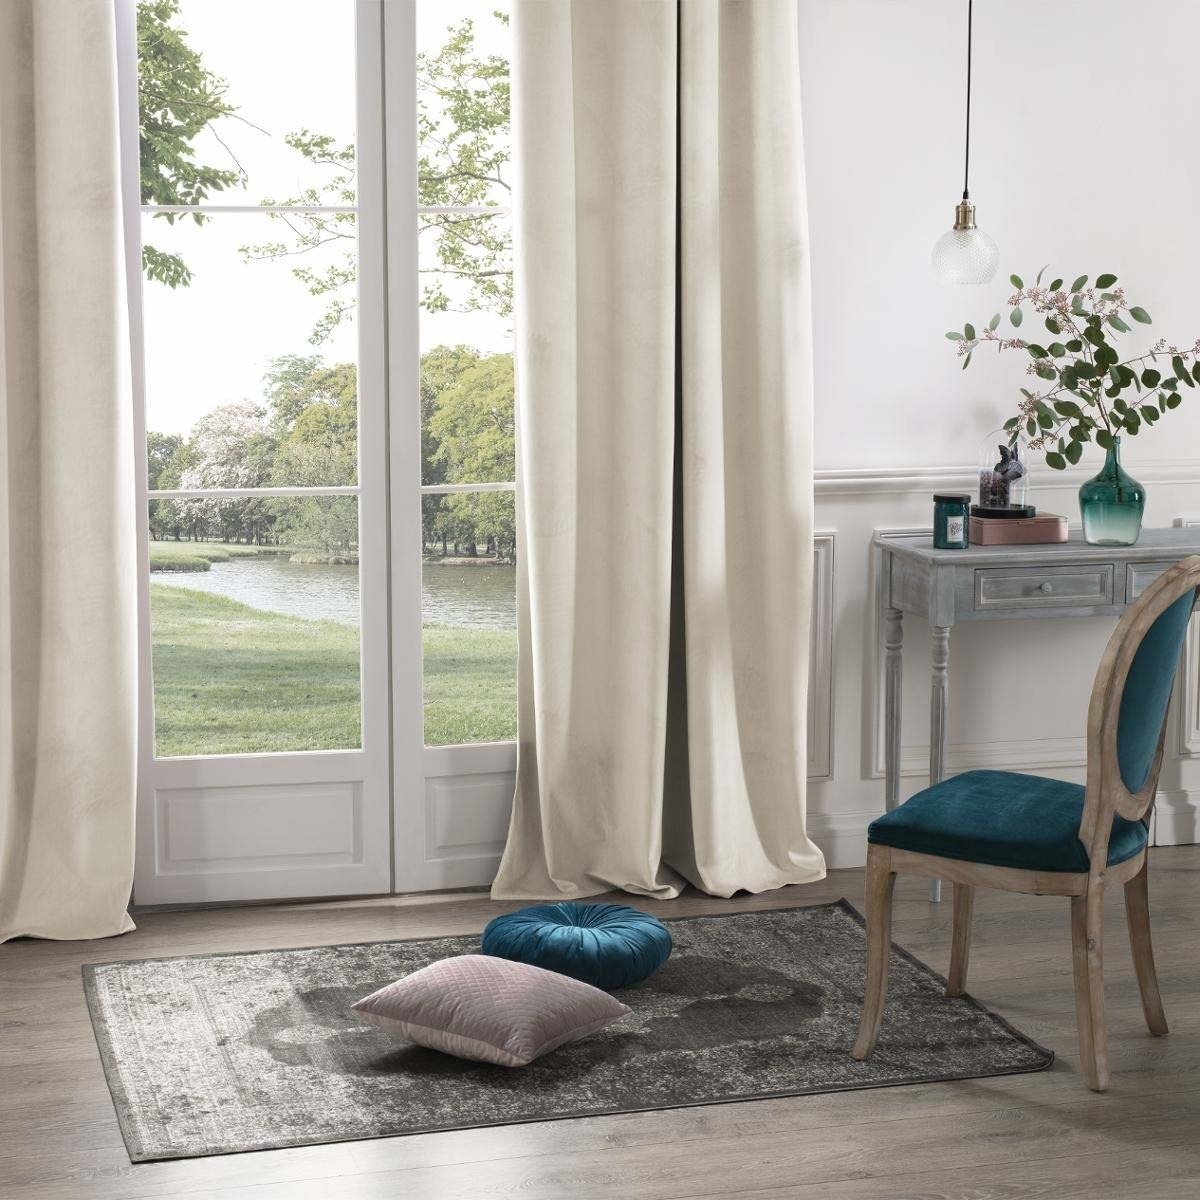 Atmosphera Zasłona okienna w kolorze beżowym wykonana z poliestru to idealna ozdoba domowego wnętrza